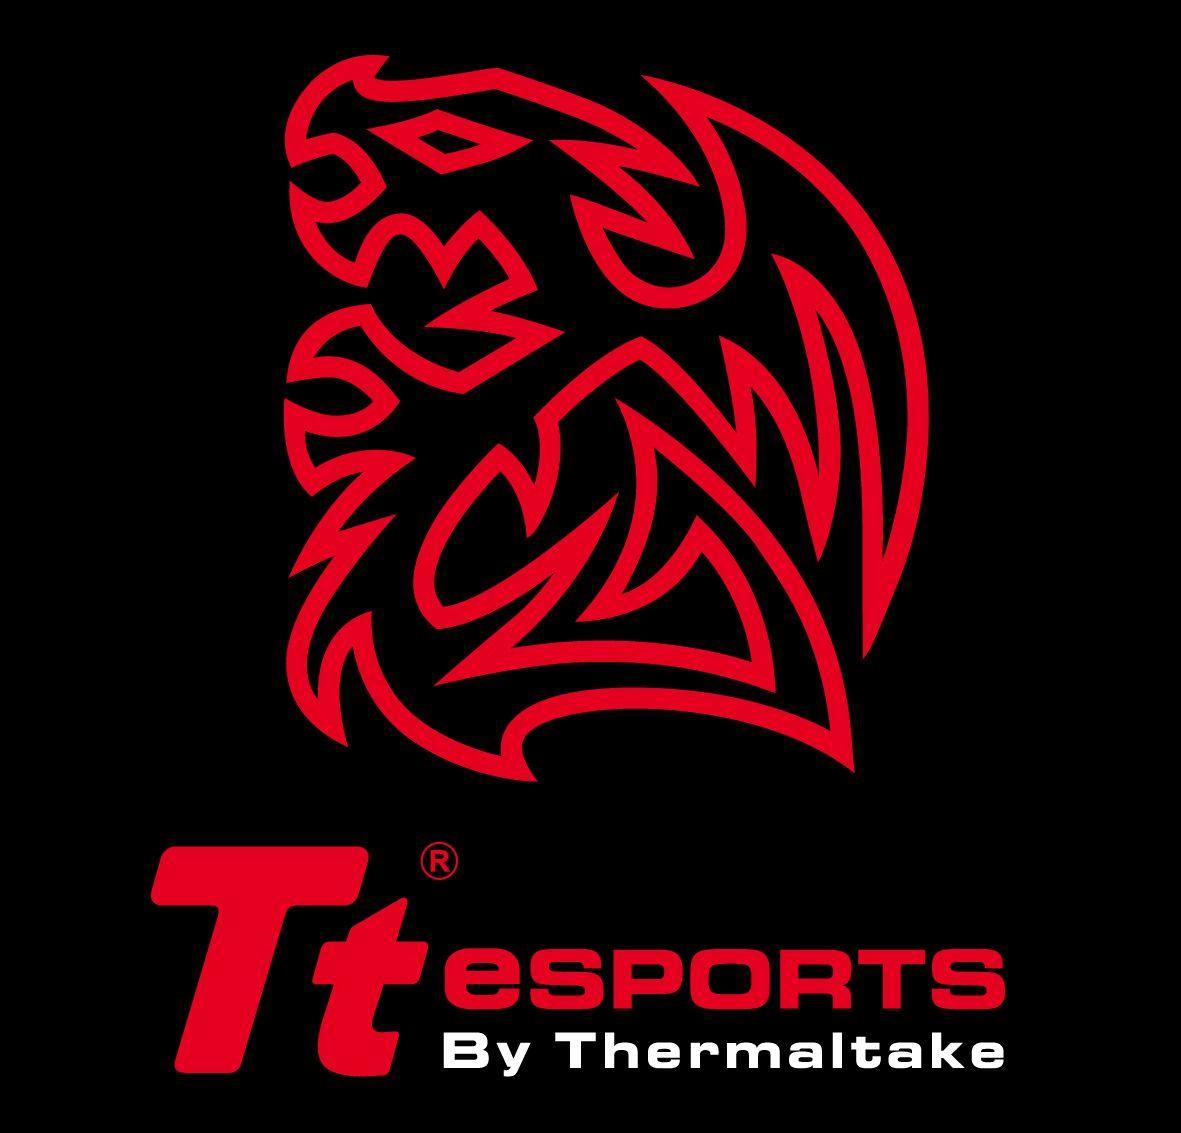 Thermaltake Logo - Thermaltake Groups